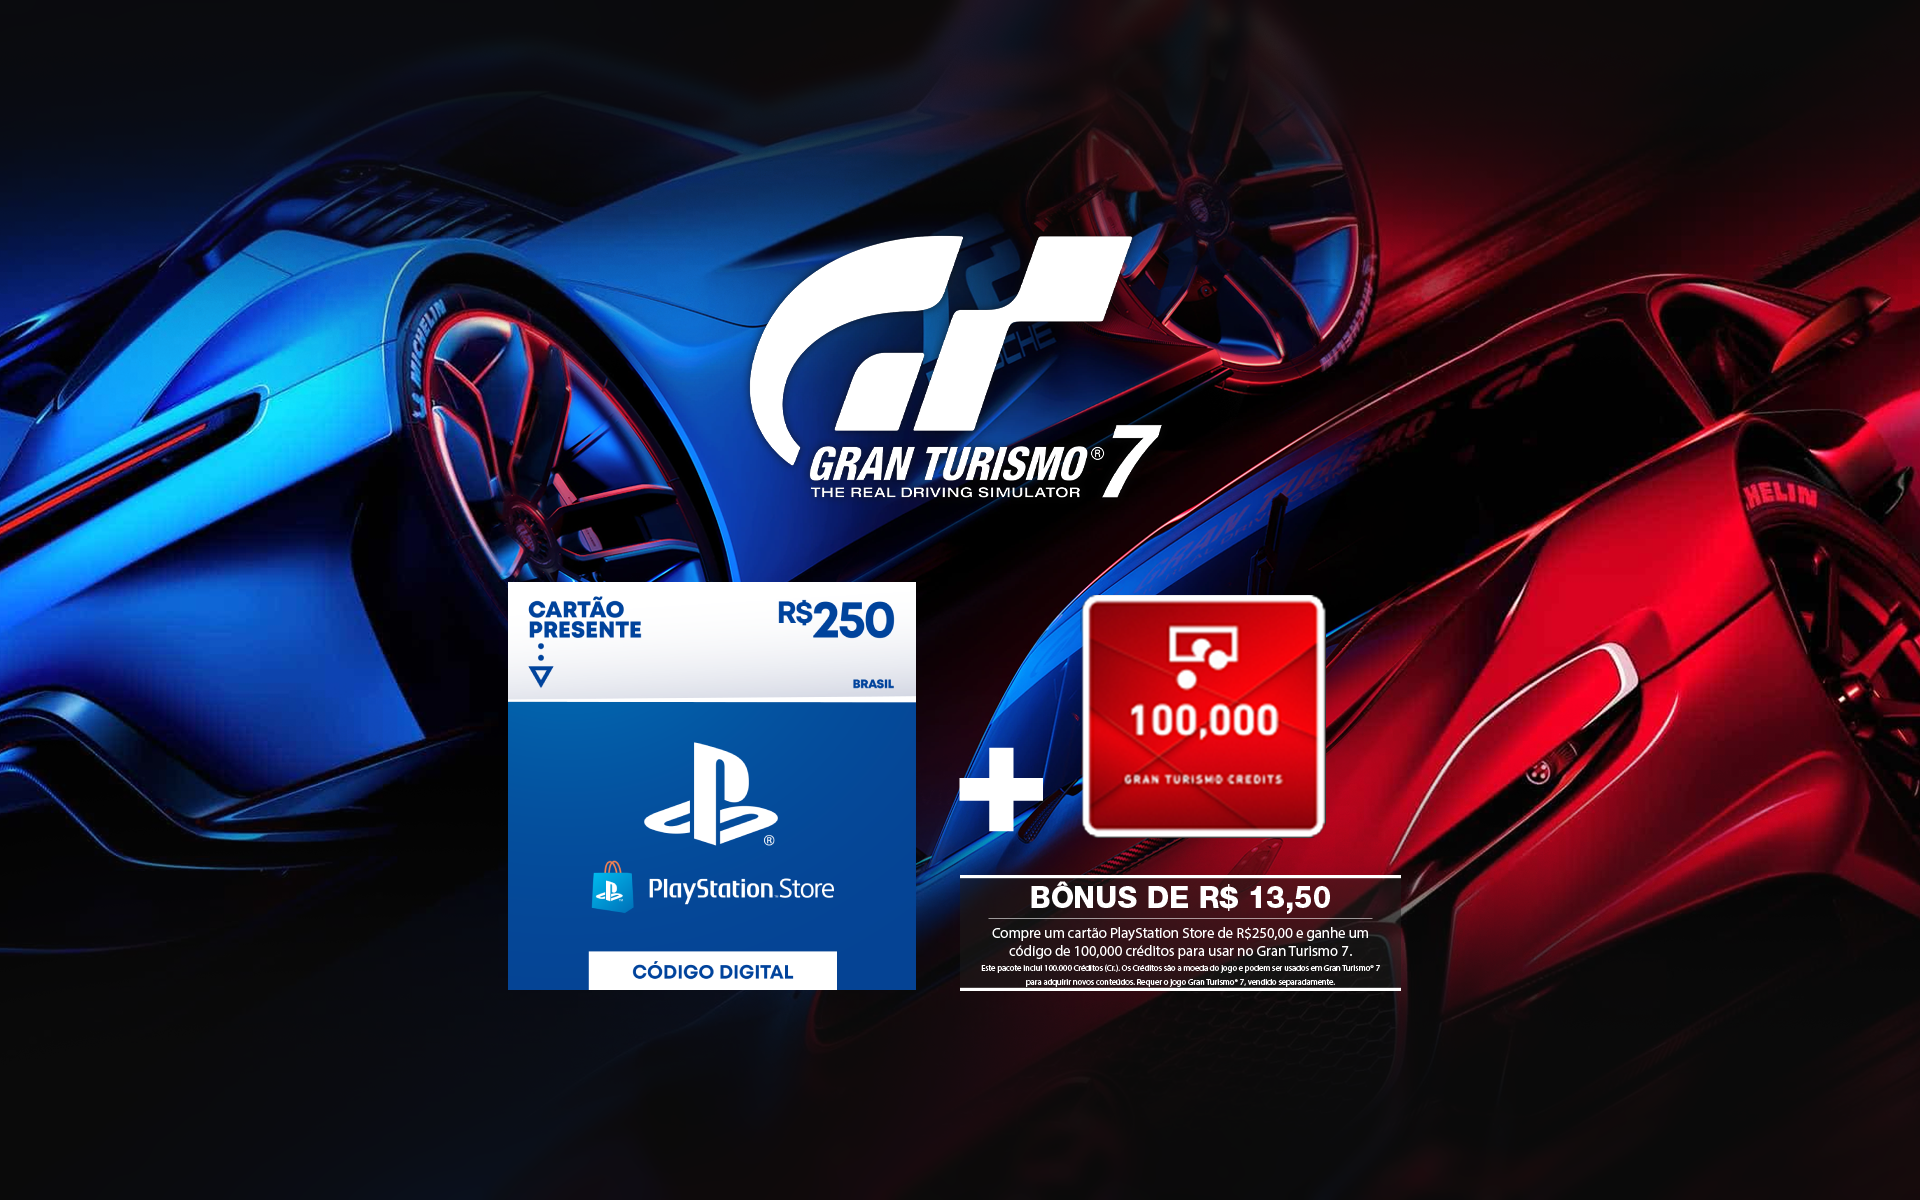 Imagem do produto R$250 PlayStation Store - Cartão Presente Digital + 100,000 Gran Turismo Credits